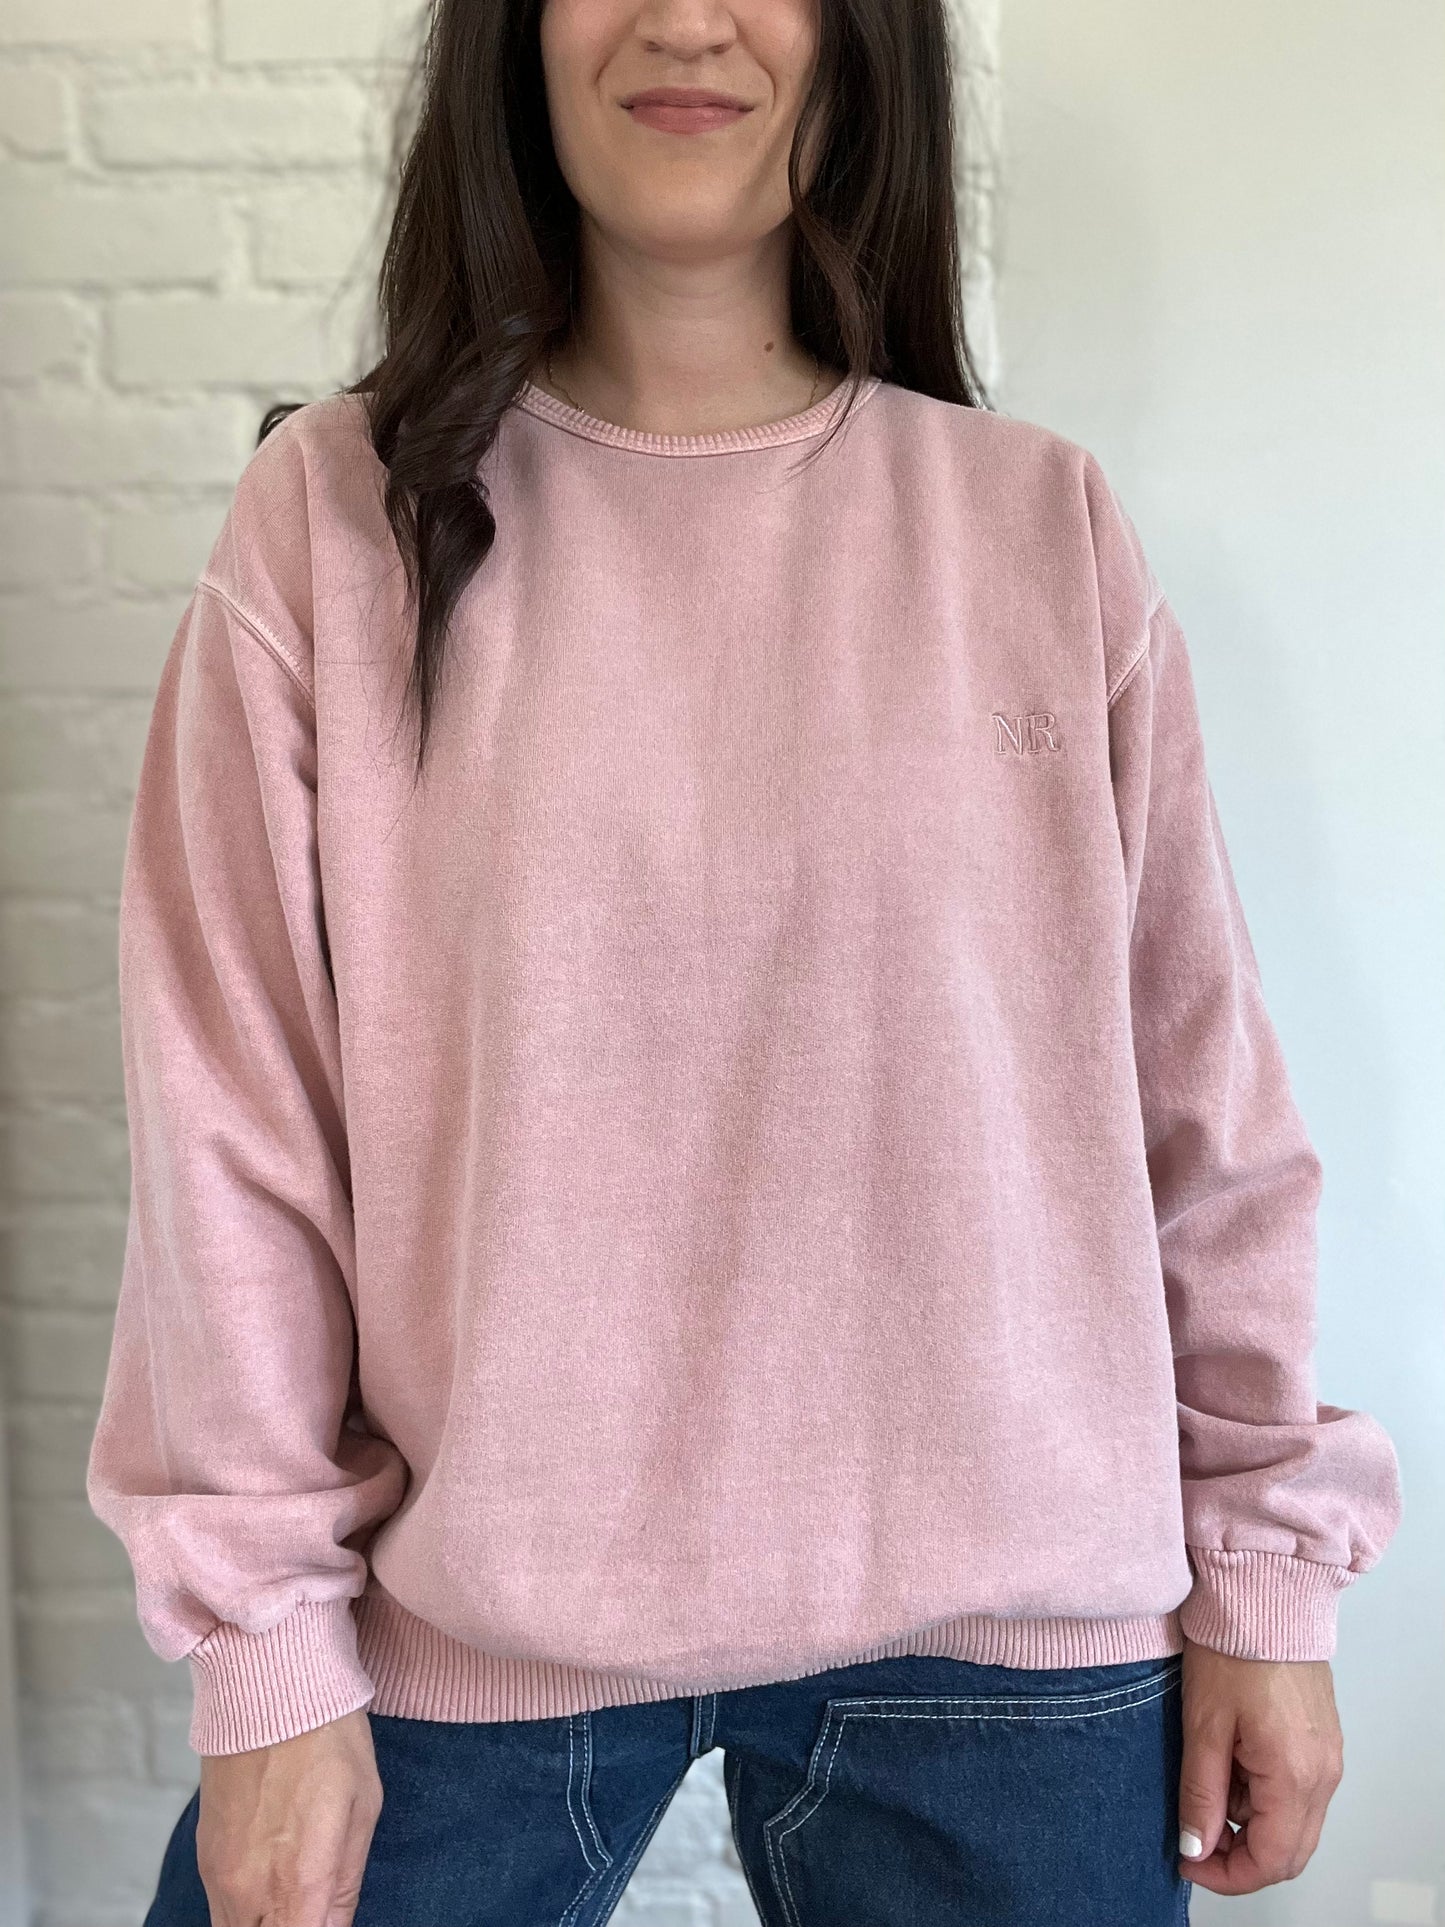 Northern Reflections Blush Sweater - Size XL